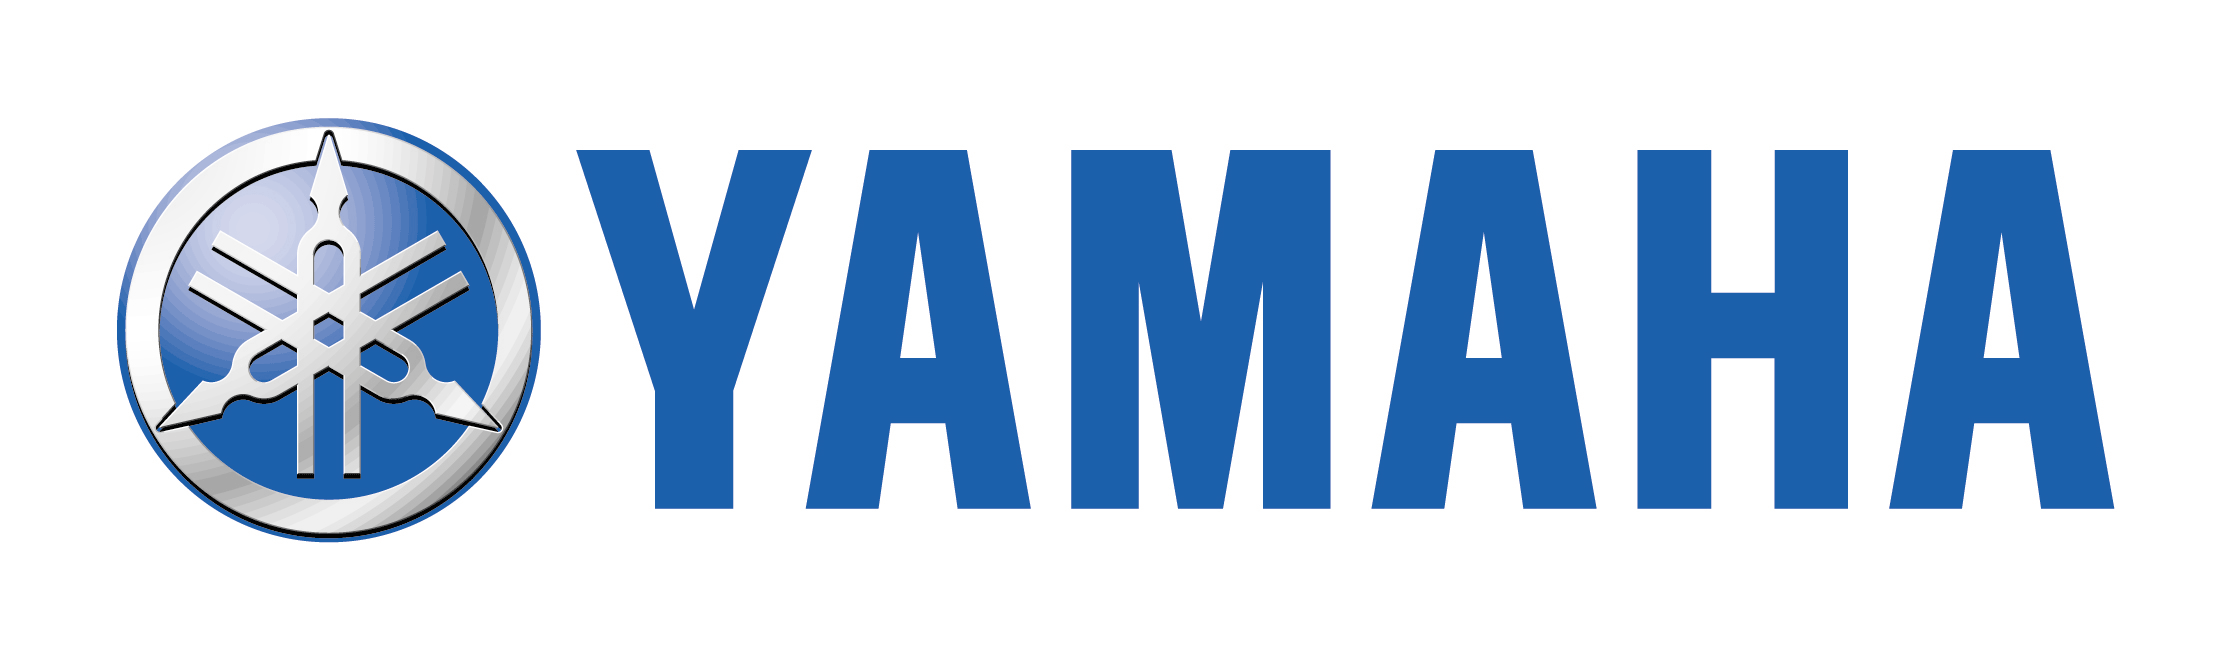 Logo-yamaha